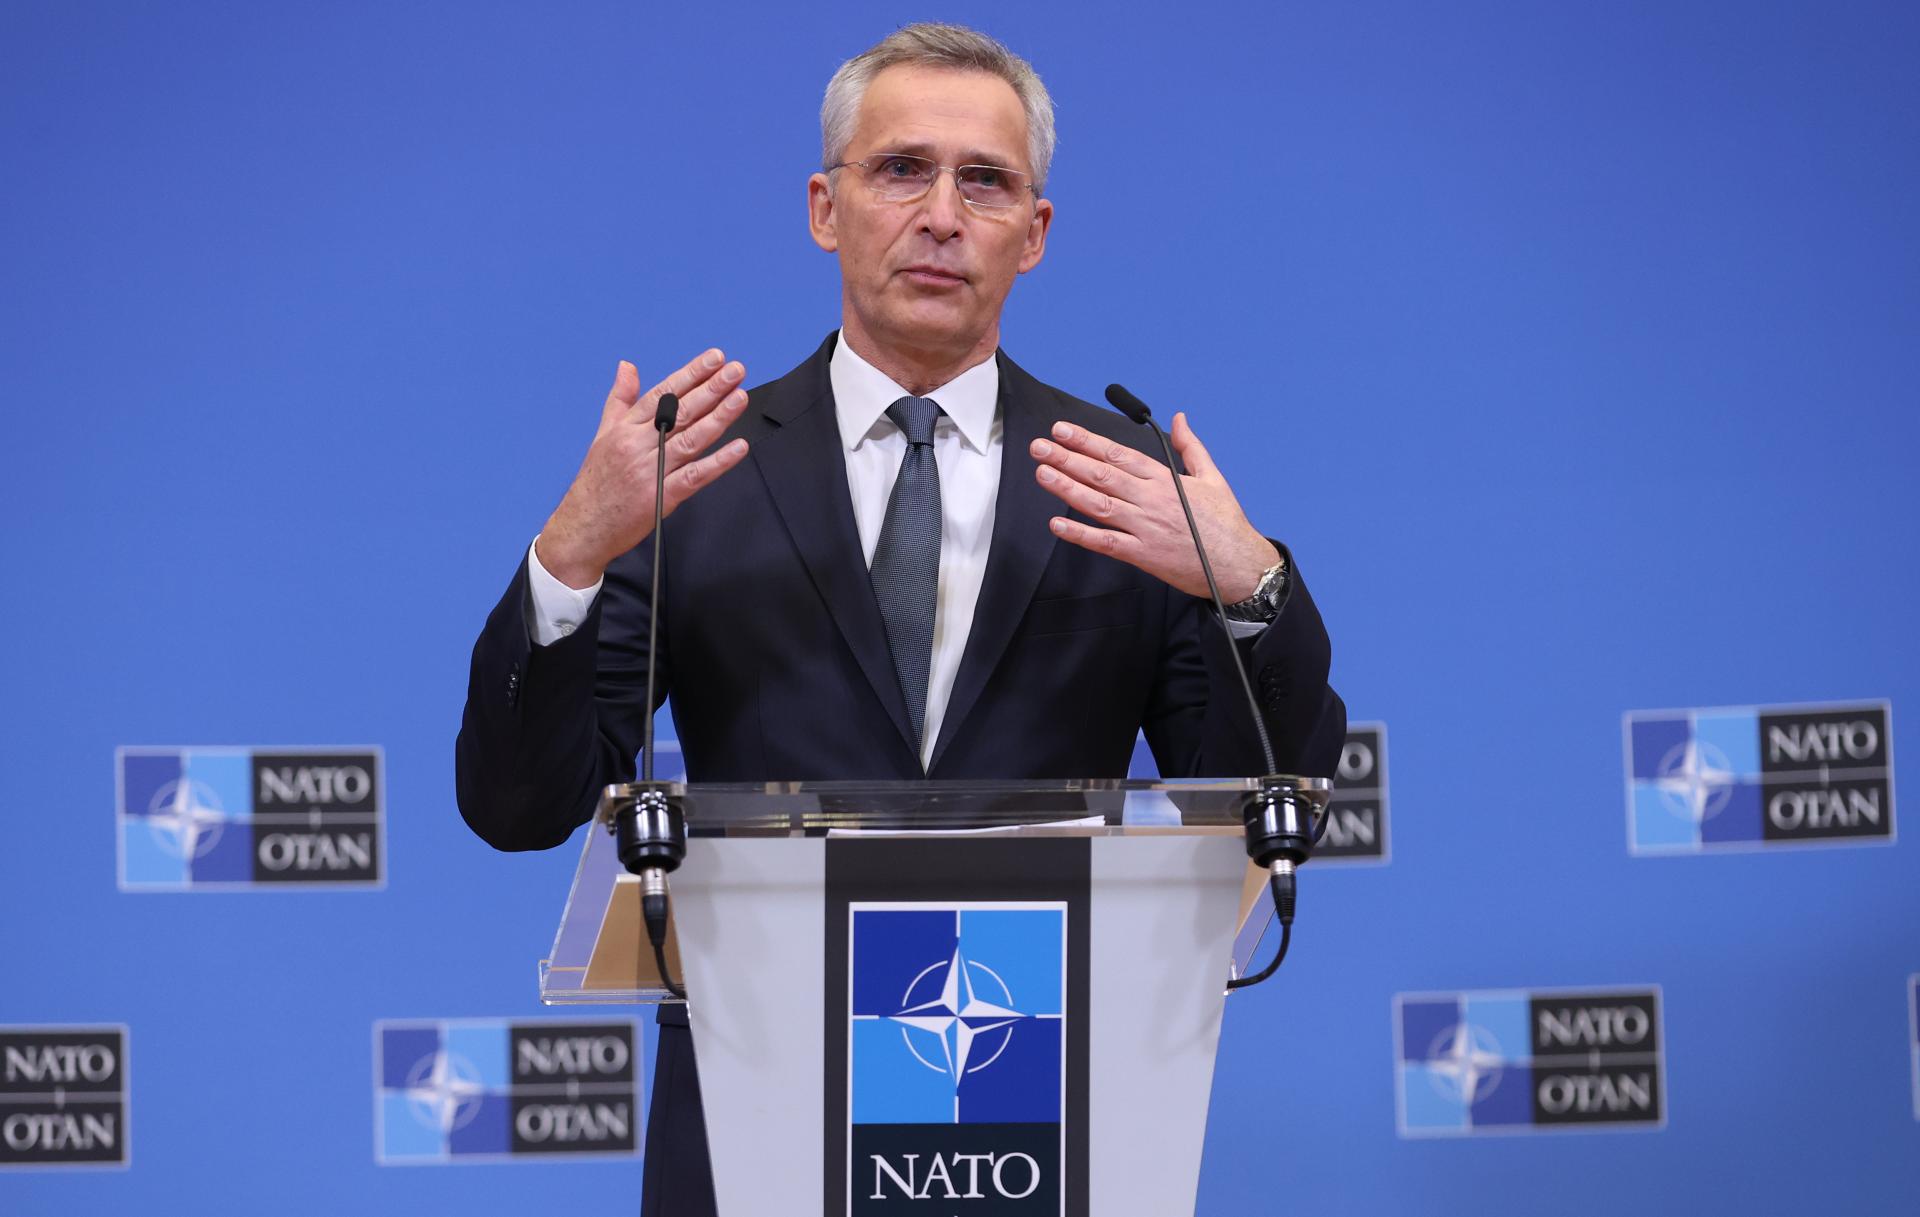 Canlı qüvvə problemini Ukrayna özü həll etməlidir – NATO-nun baş katibi Yens Stoltenberq